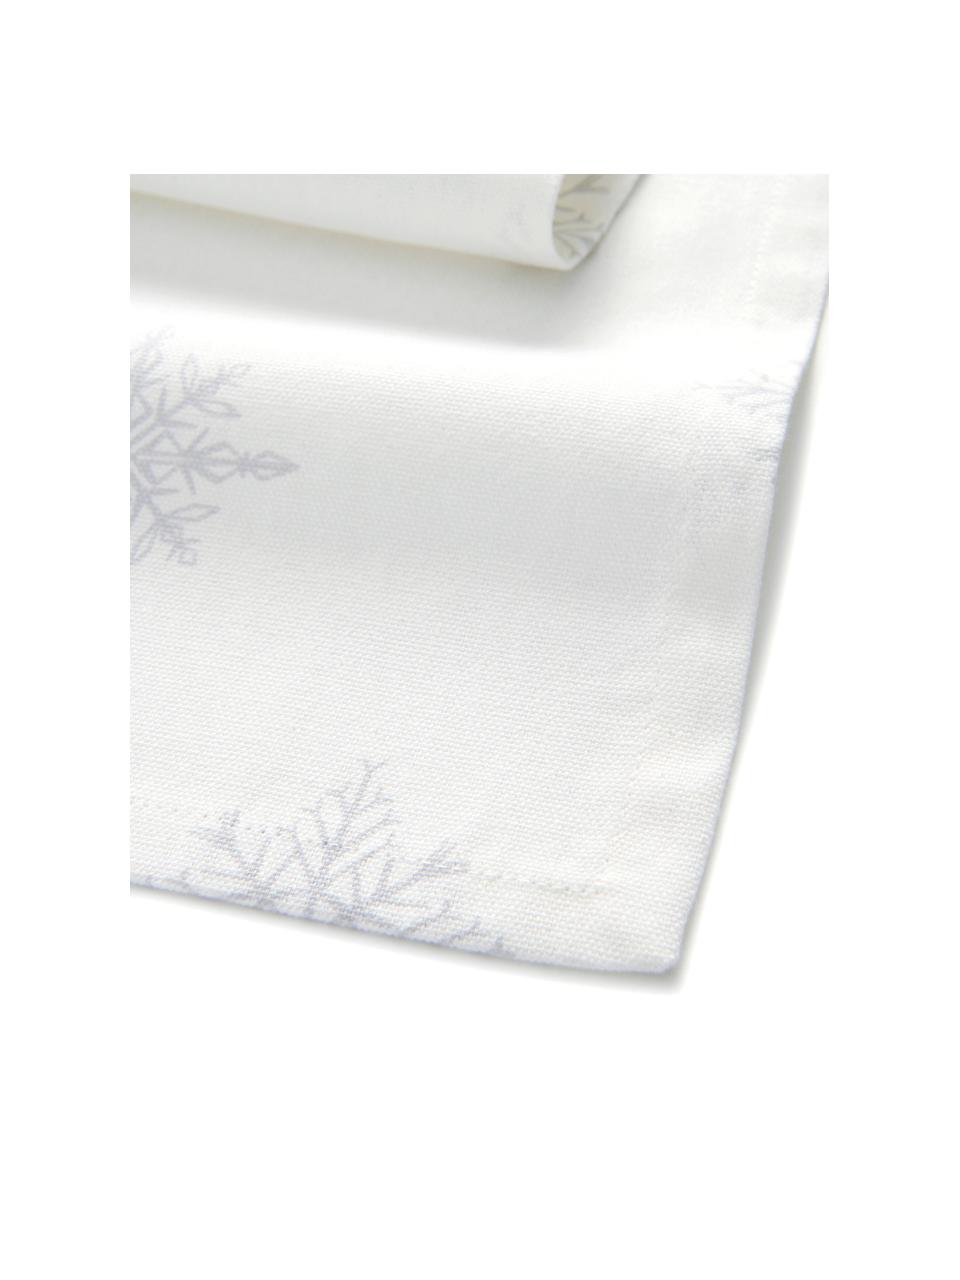 Chemin de table Snow, 100% coton, issu d'une culture durable de coton, Blanc crème, gris clair, 40 x 140 cm